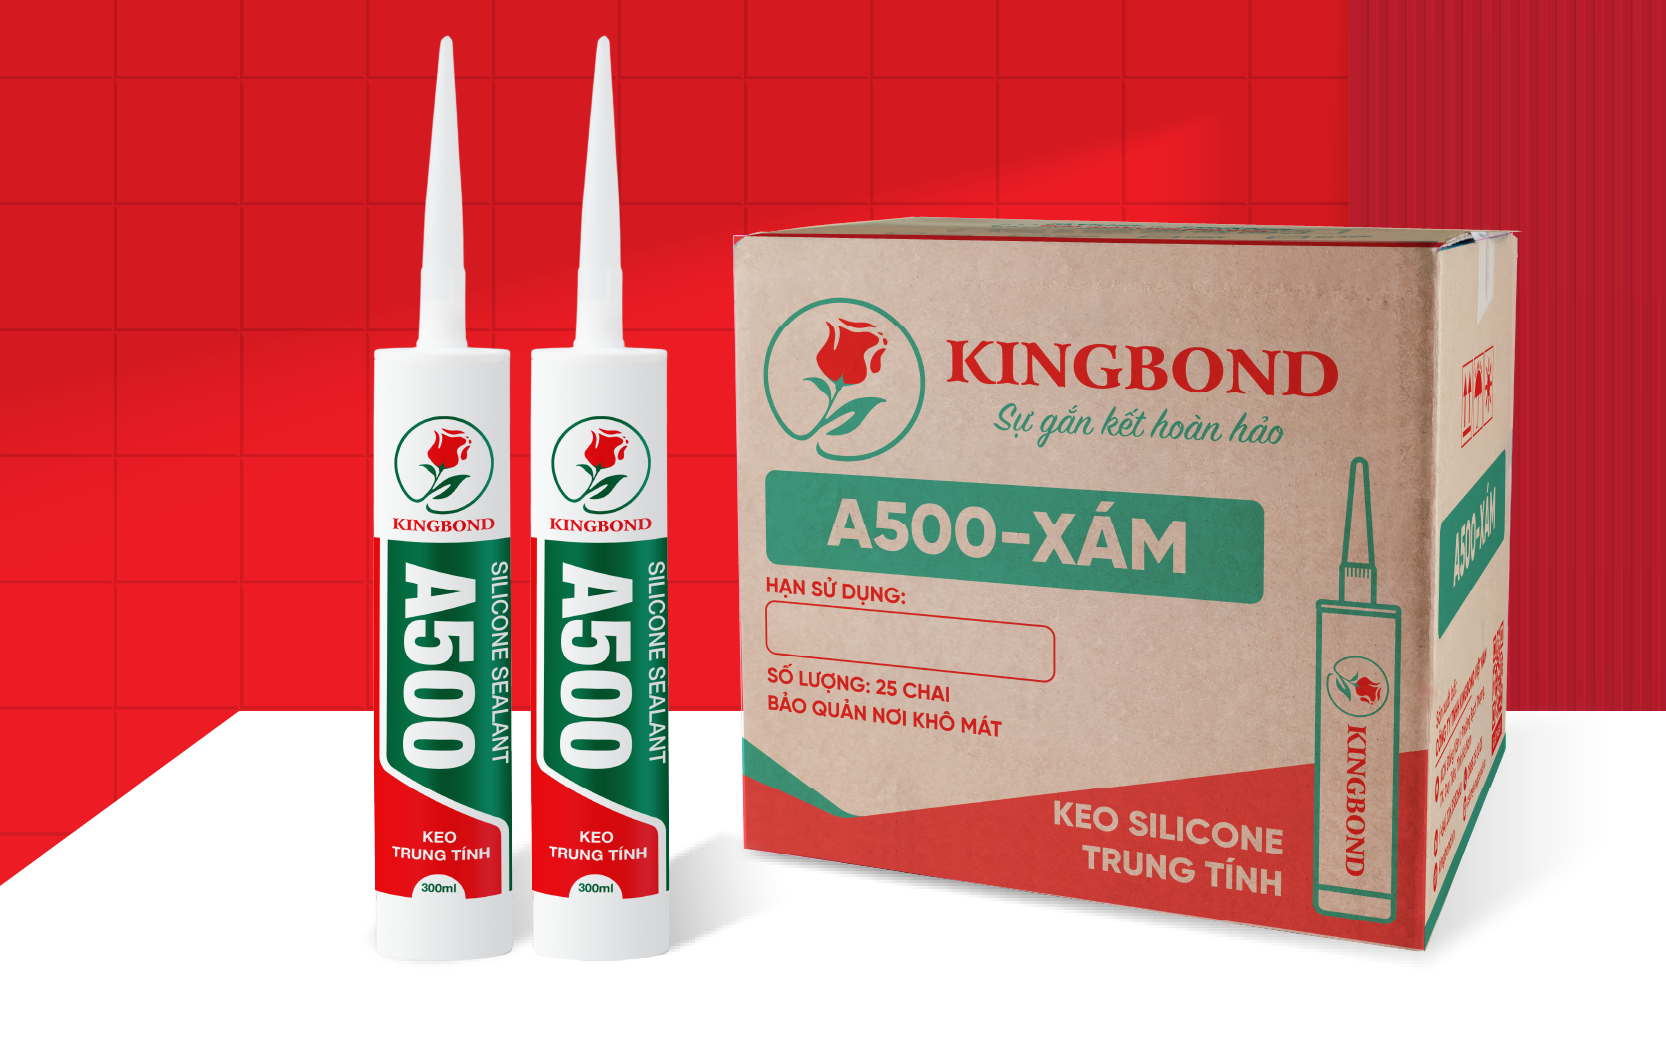 Keo silicone trung tính A500 xám - Công Ty TNHH Kingbond Việt Nam